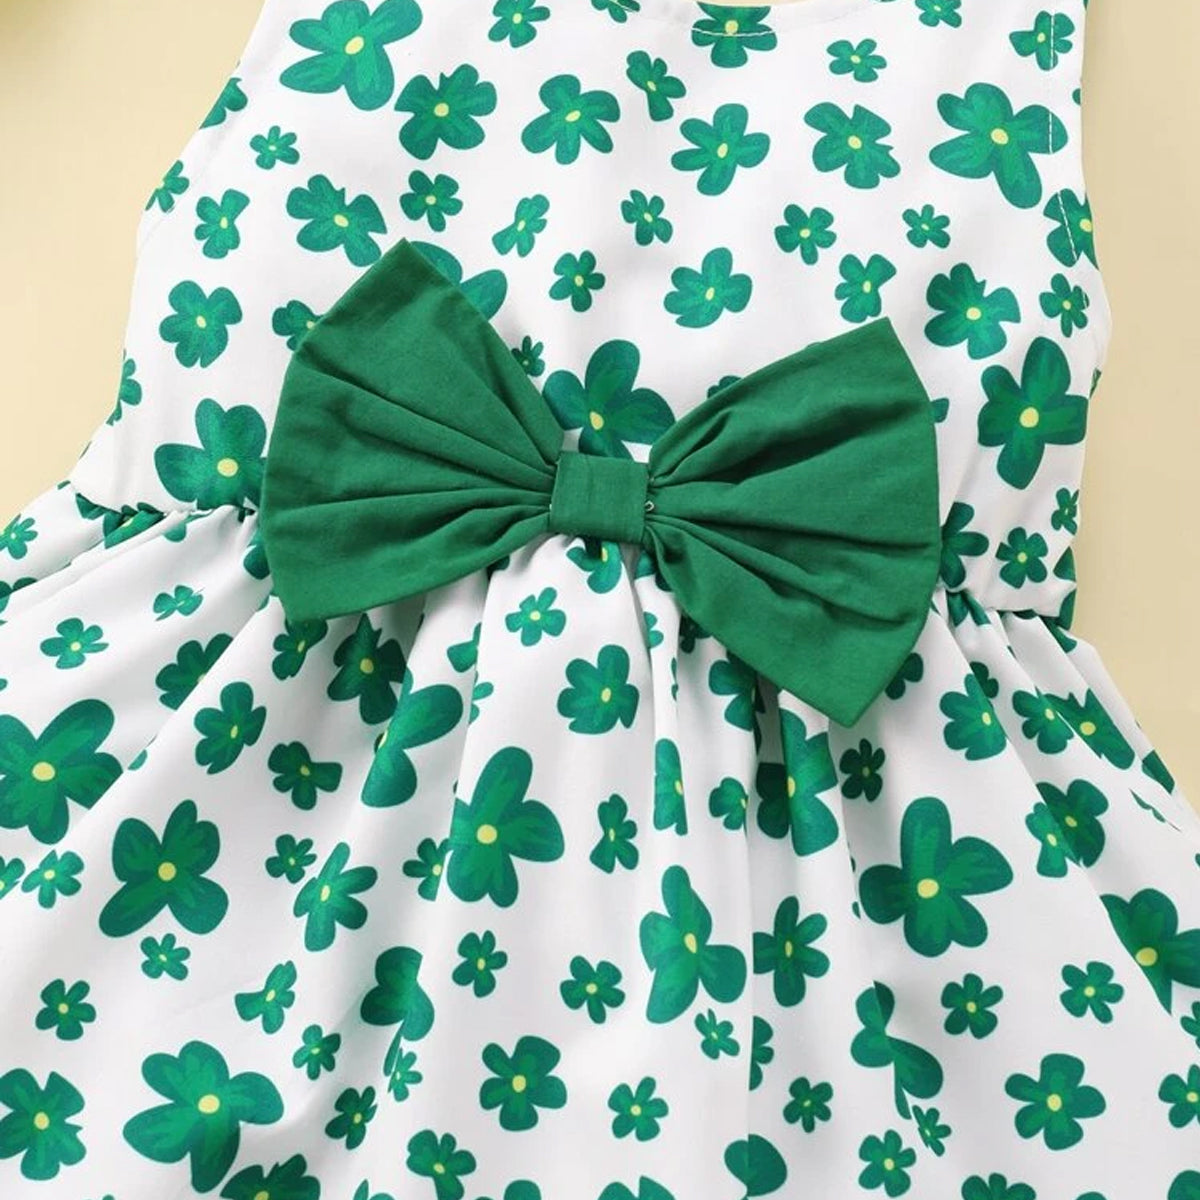 BabyGirl's Cotton Green Floral Frocks & Dresses for Kids.